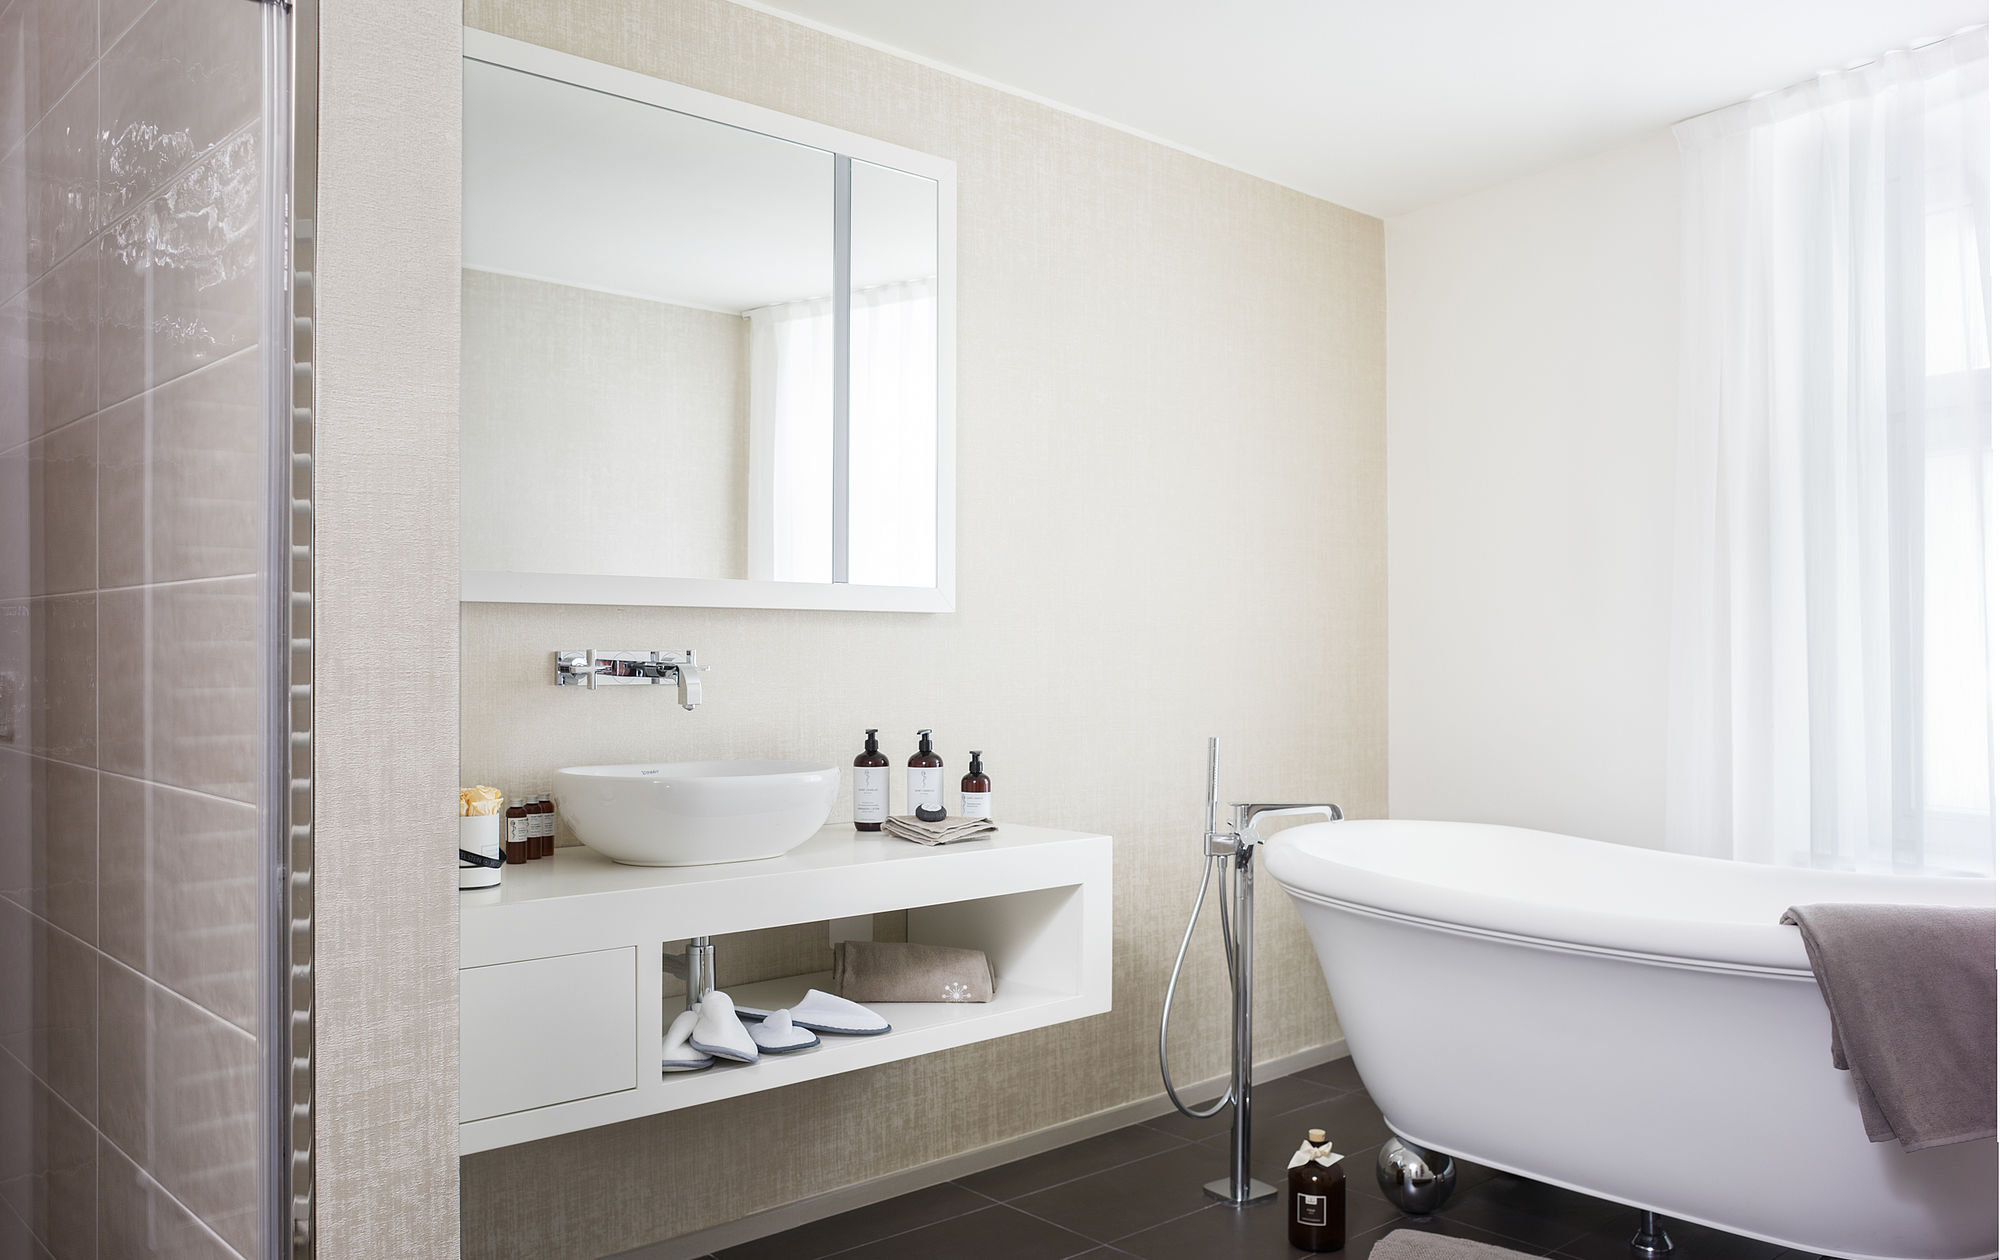 Ampio bagno con vasca e moderni mobili da bagno bianchi nella suite dell'hotel di lusso Stein nel centro di Salisburgo